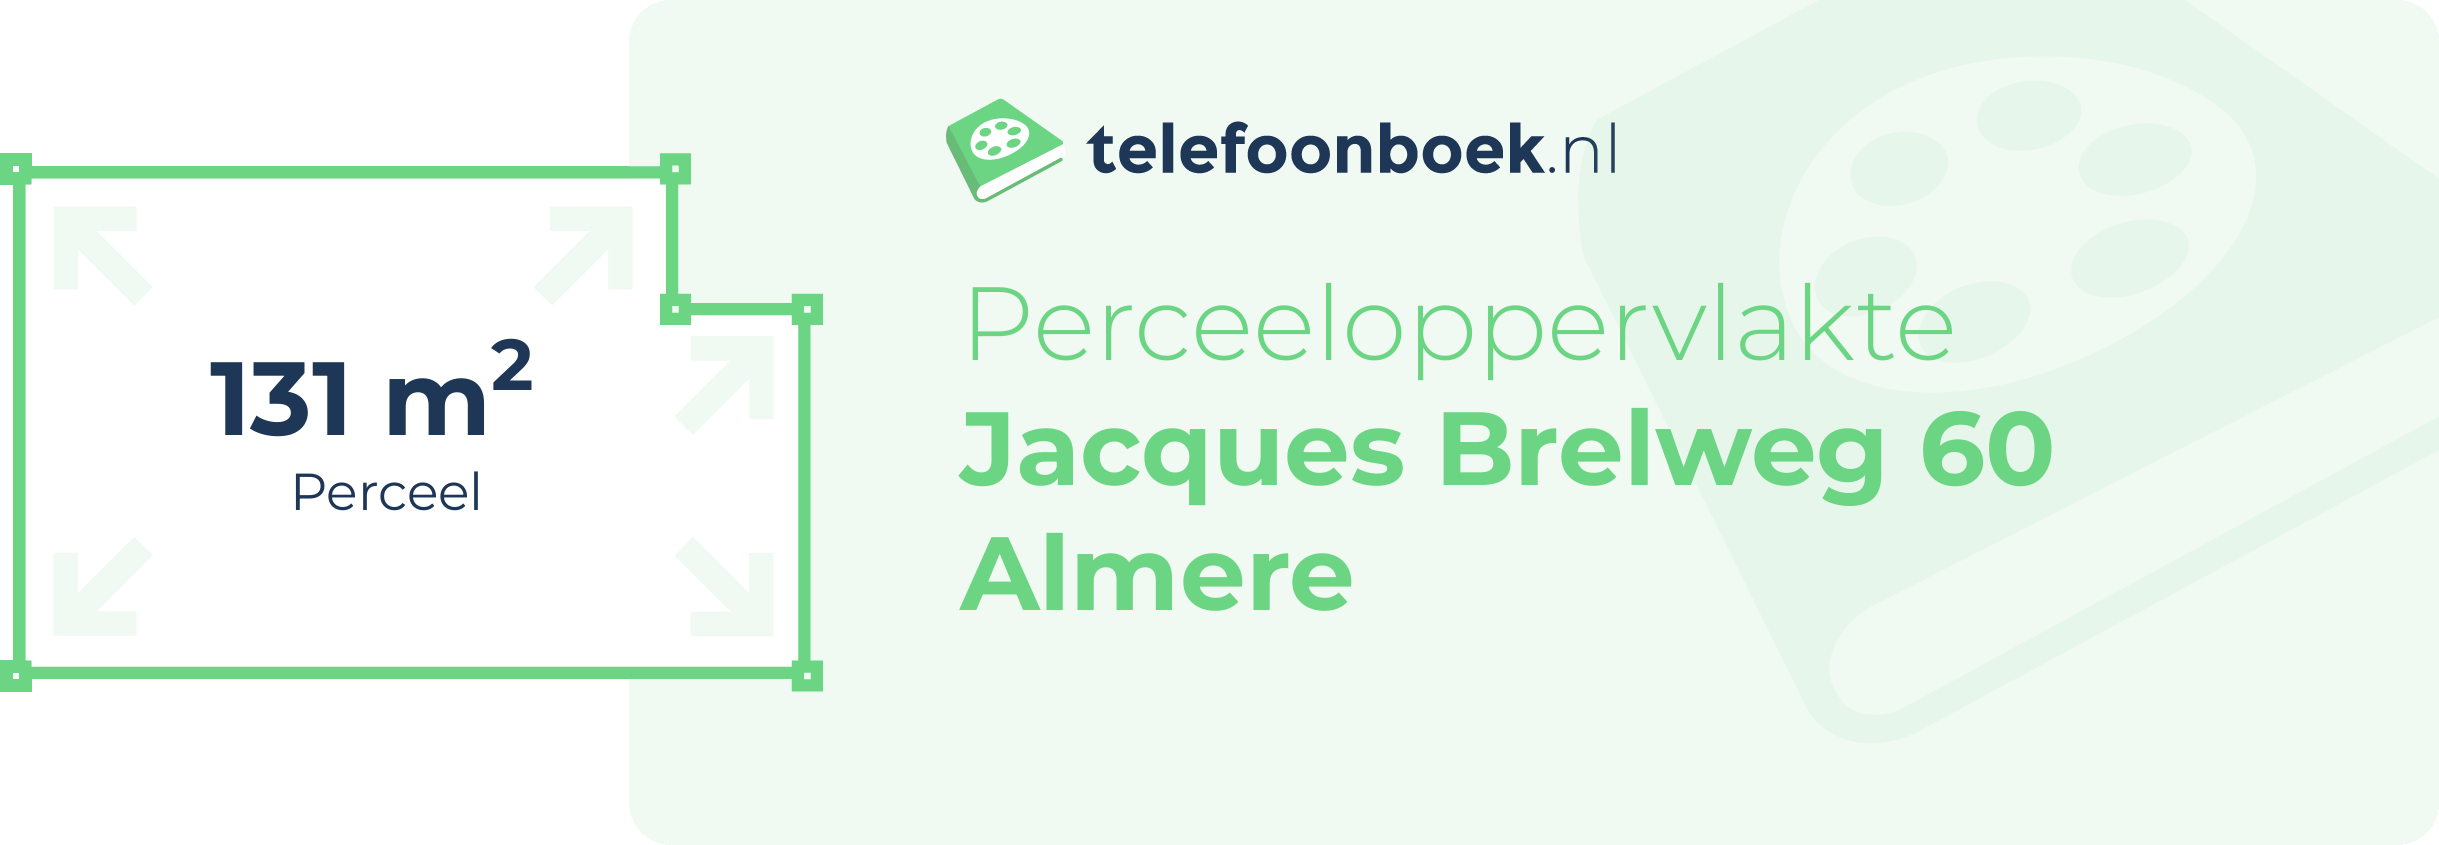 Perceeloppervlakte Jacques Brelweg 60 Almere